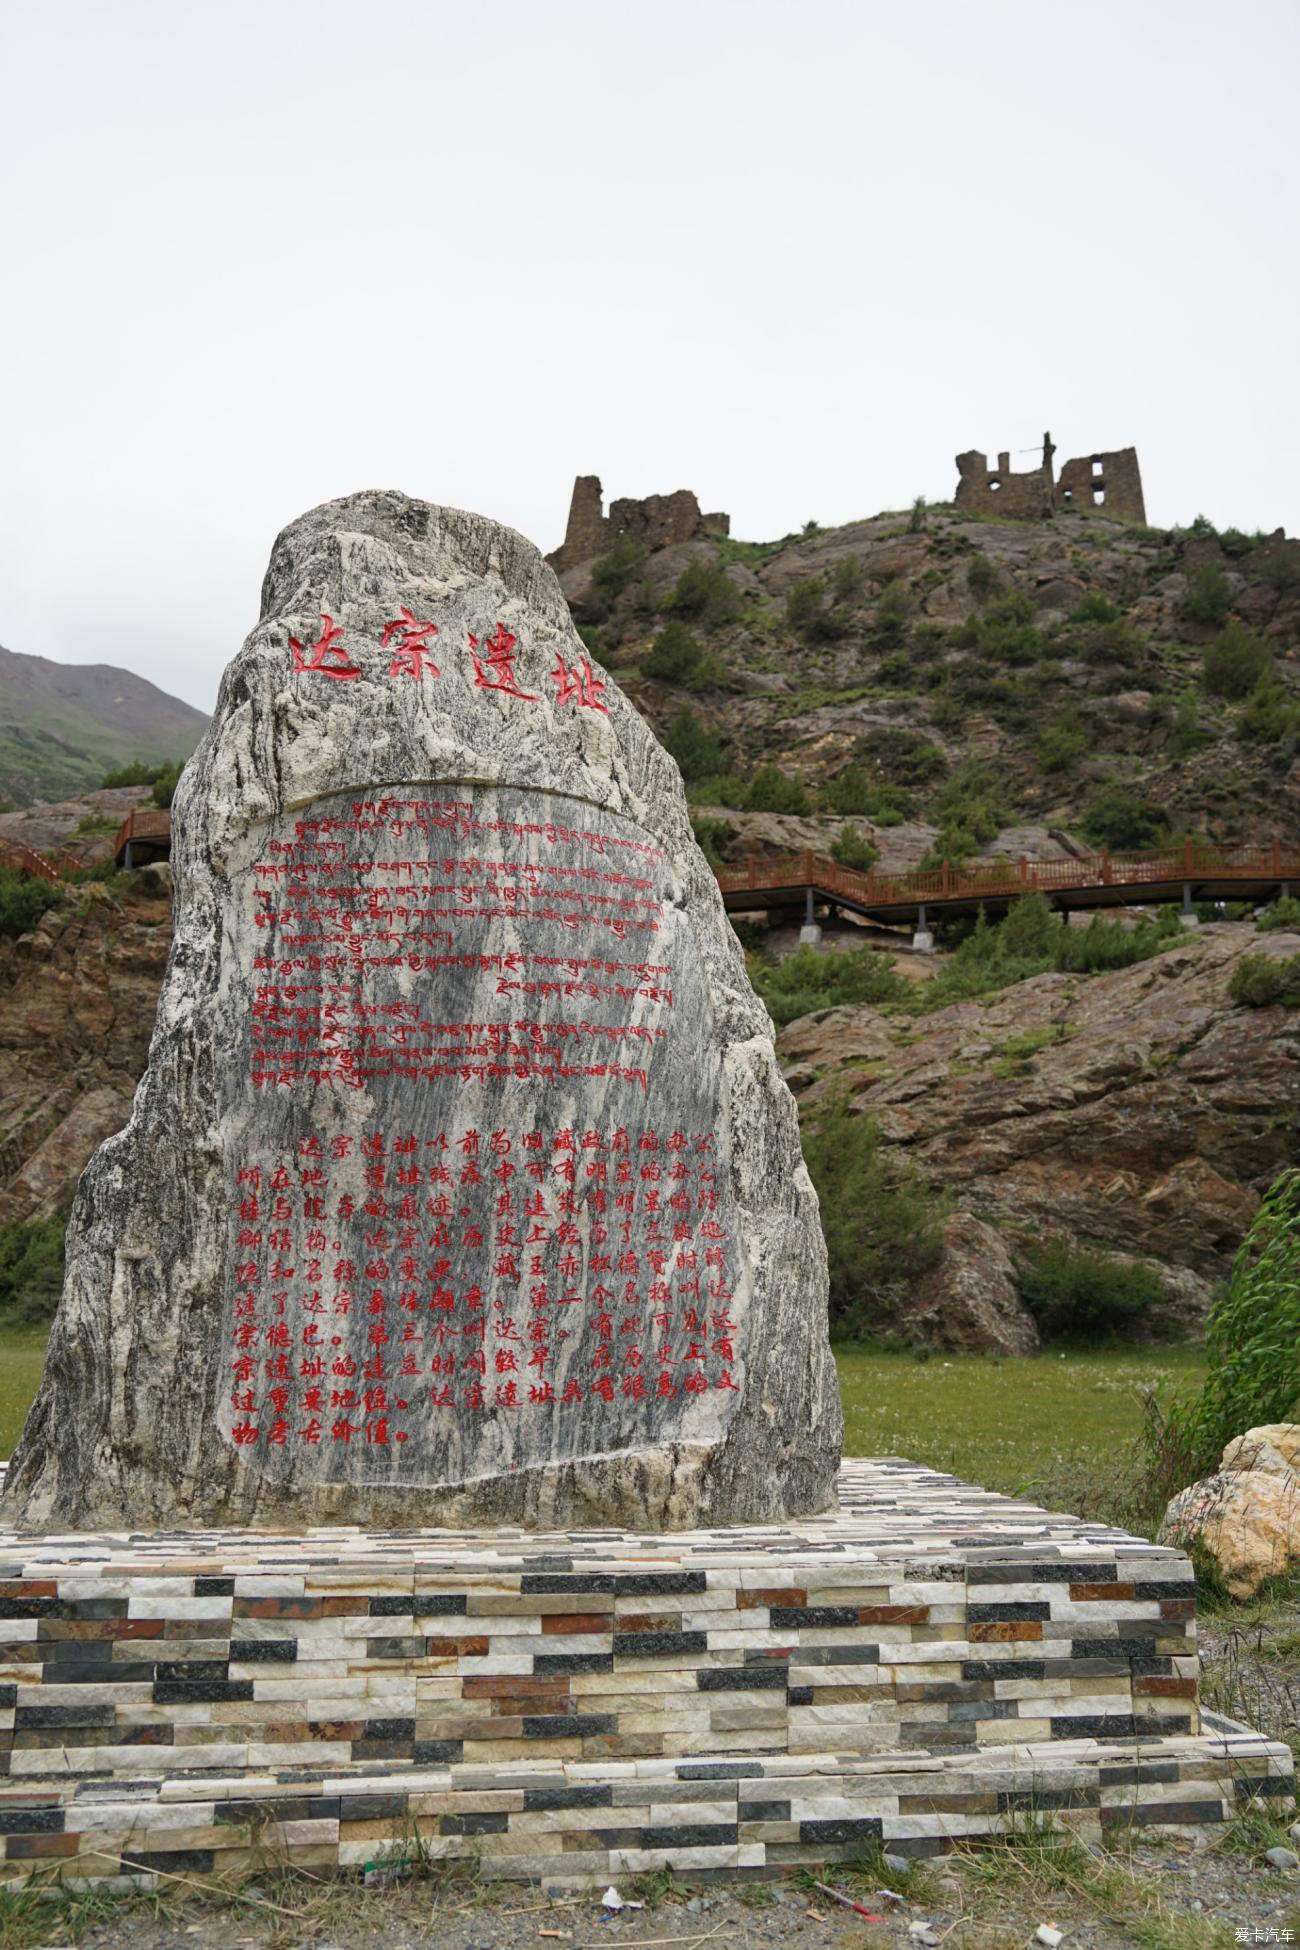 317进318出之自驾游西藏-遇见最美萨普神山